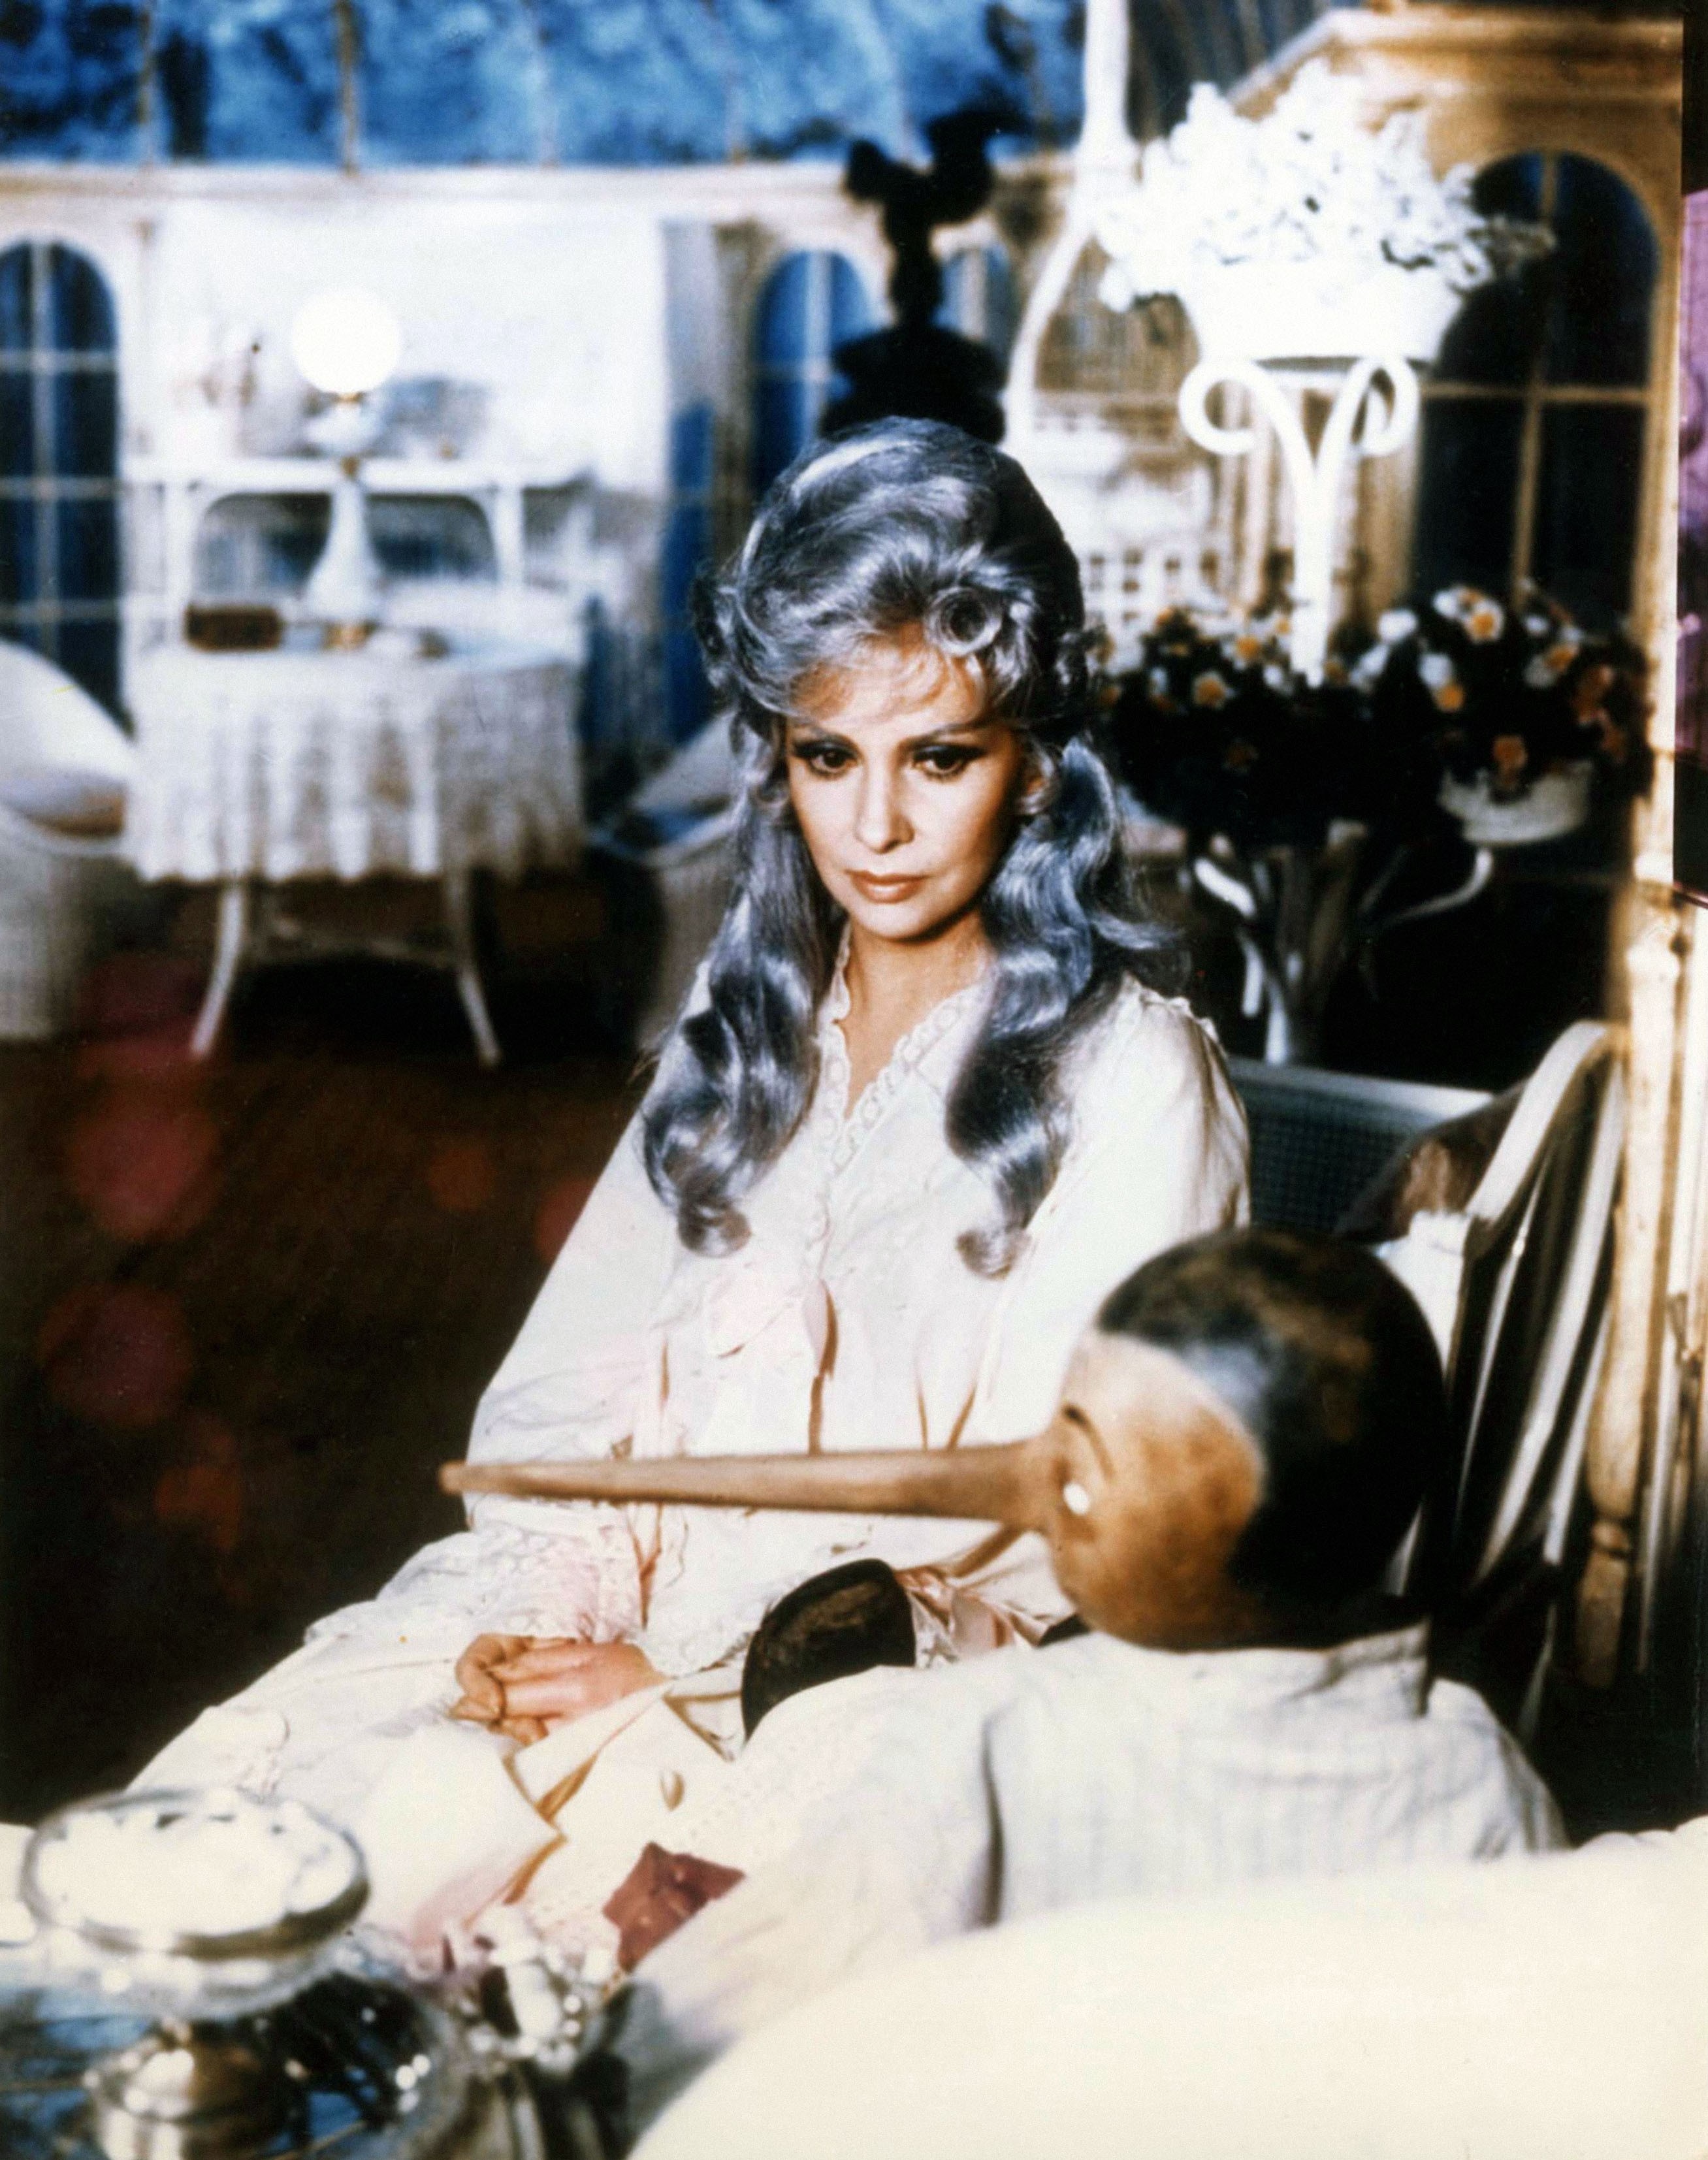 La Fata Turchina nello sceneggiato di Comencini era Gina Lollobrigida 1972